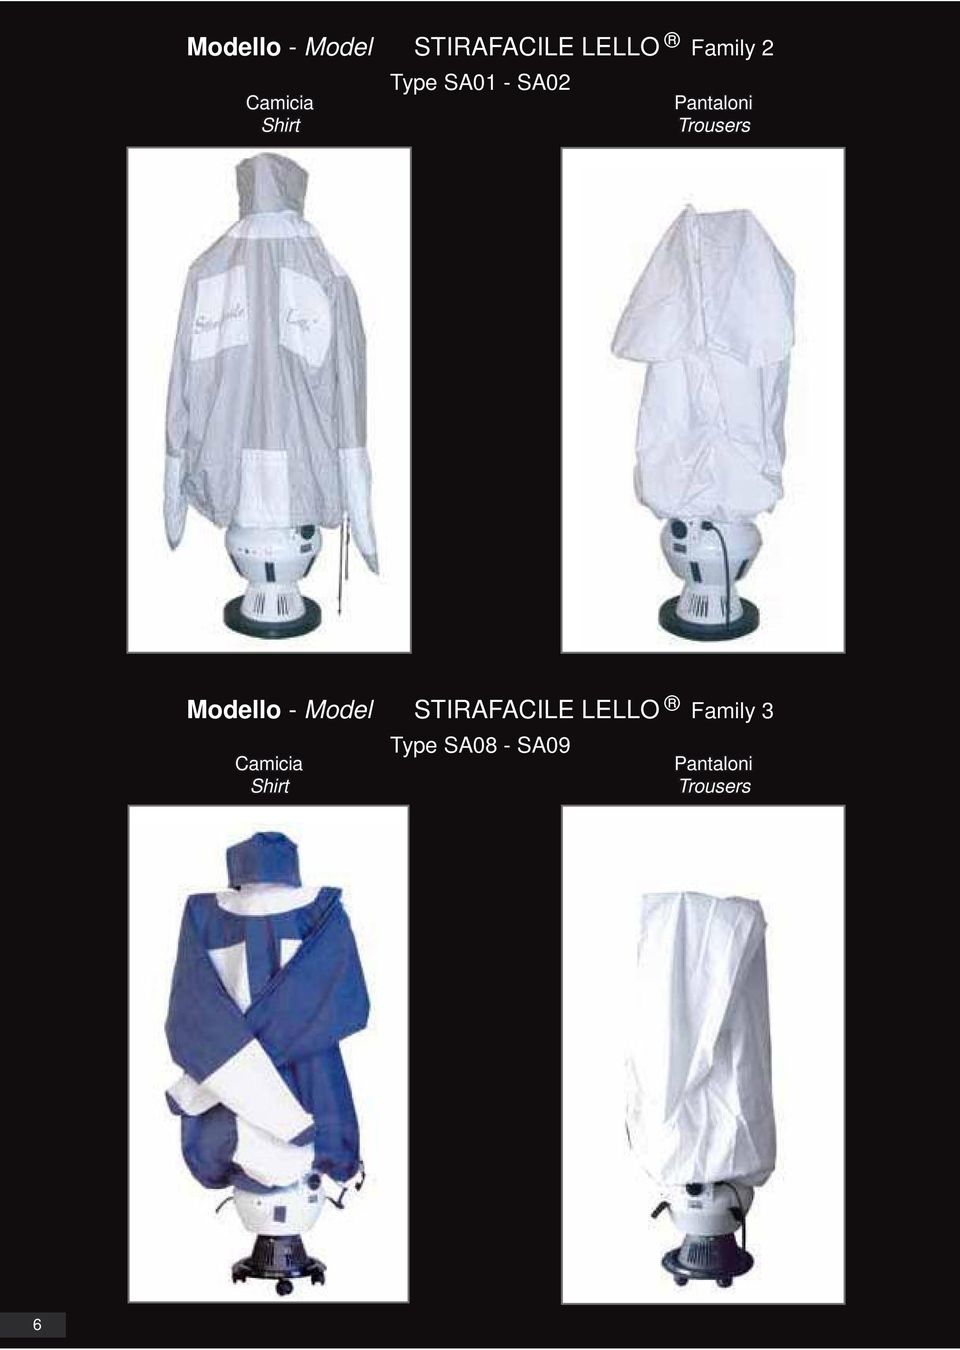 Trousers Modello - Model STIRAFACILE LELLO